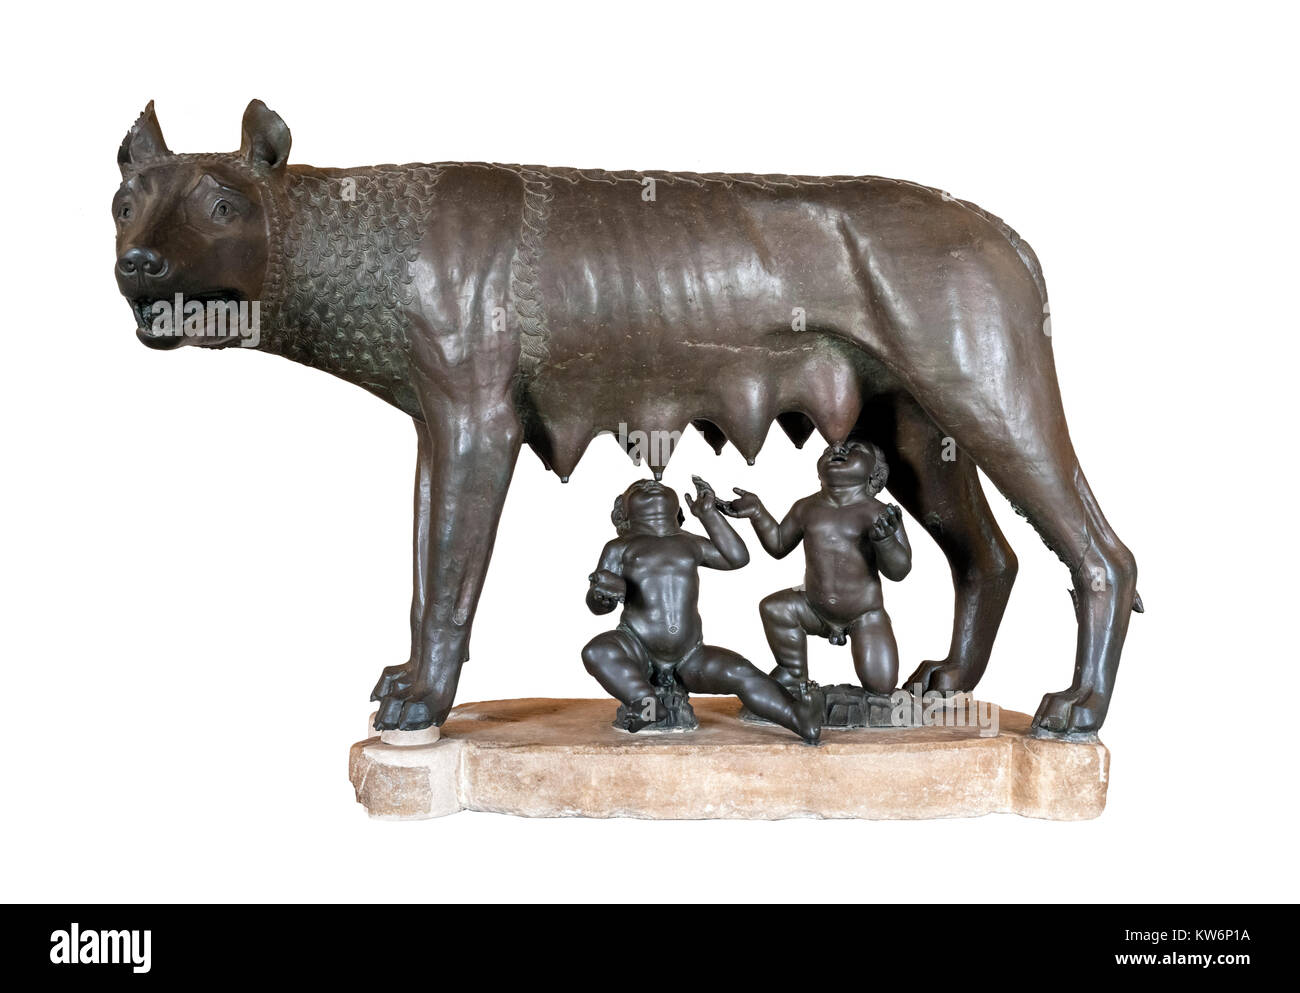 Le Musée Capitolin She-Wolf, une statue en bronze représentant un loup allaitant Romulus et Remus, les musées du Capitole, Rome, Italie Banque D'Images